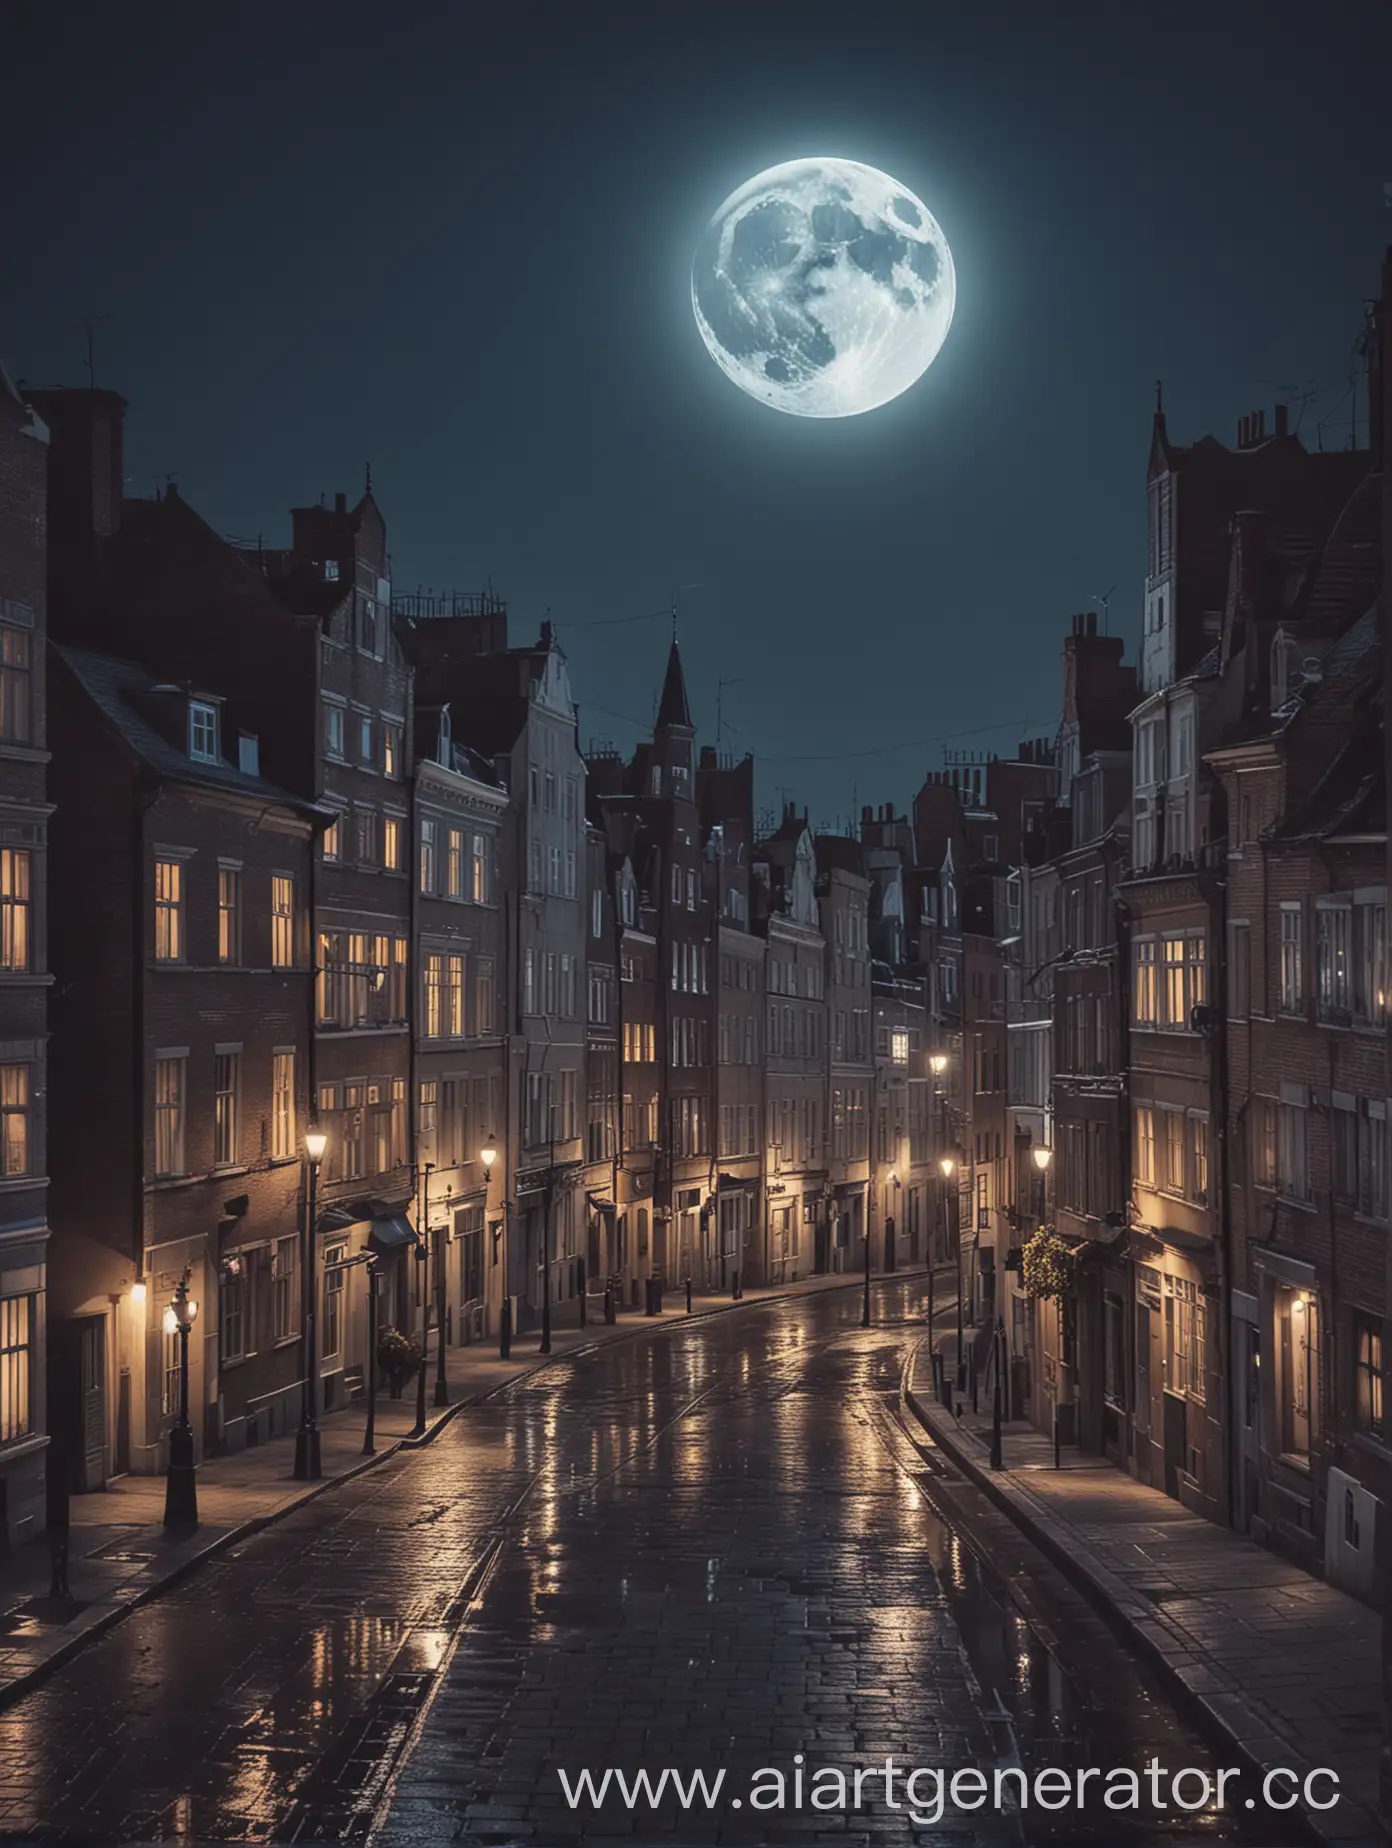 Ночной город с луной над зданиями, романтичная атмосфера, спокойная